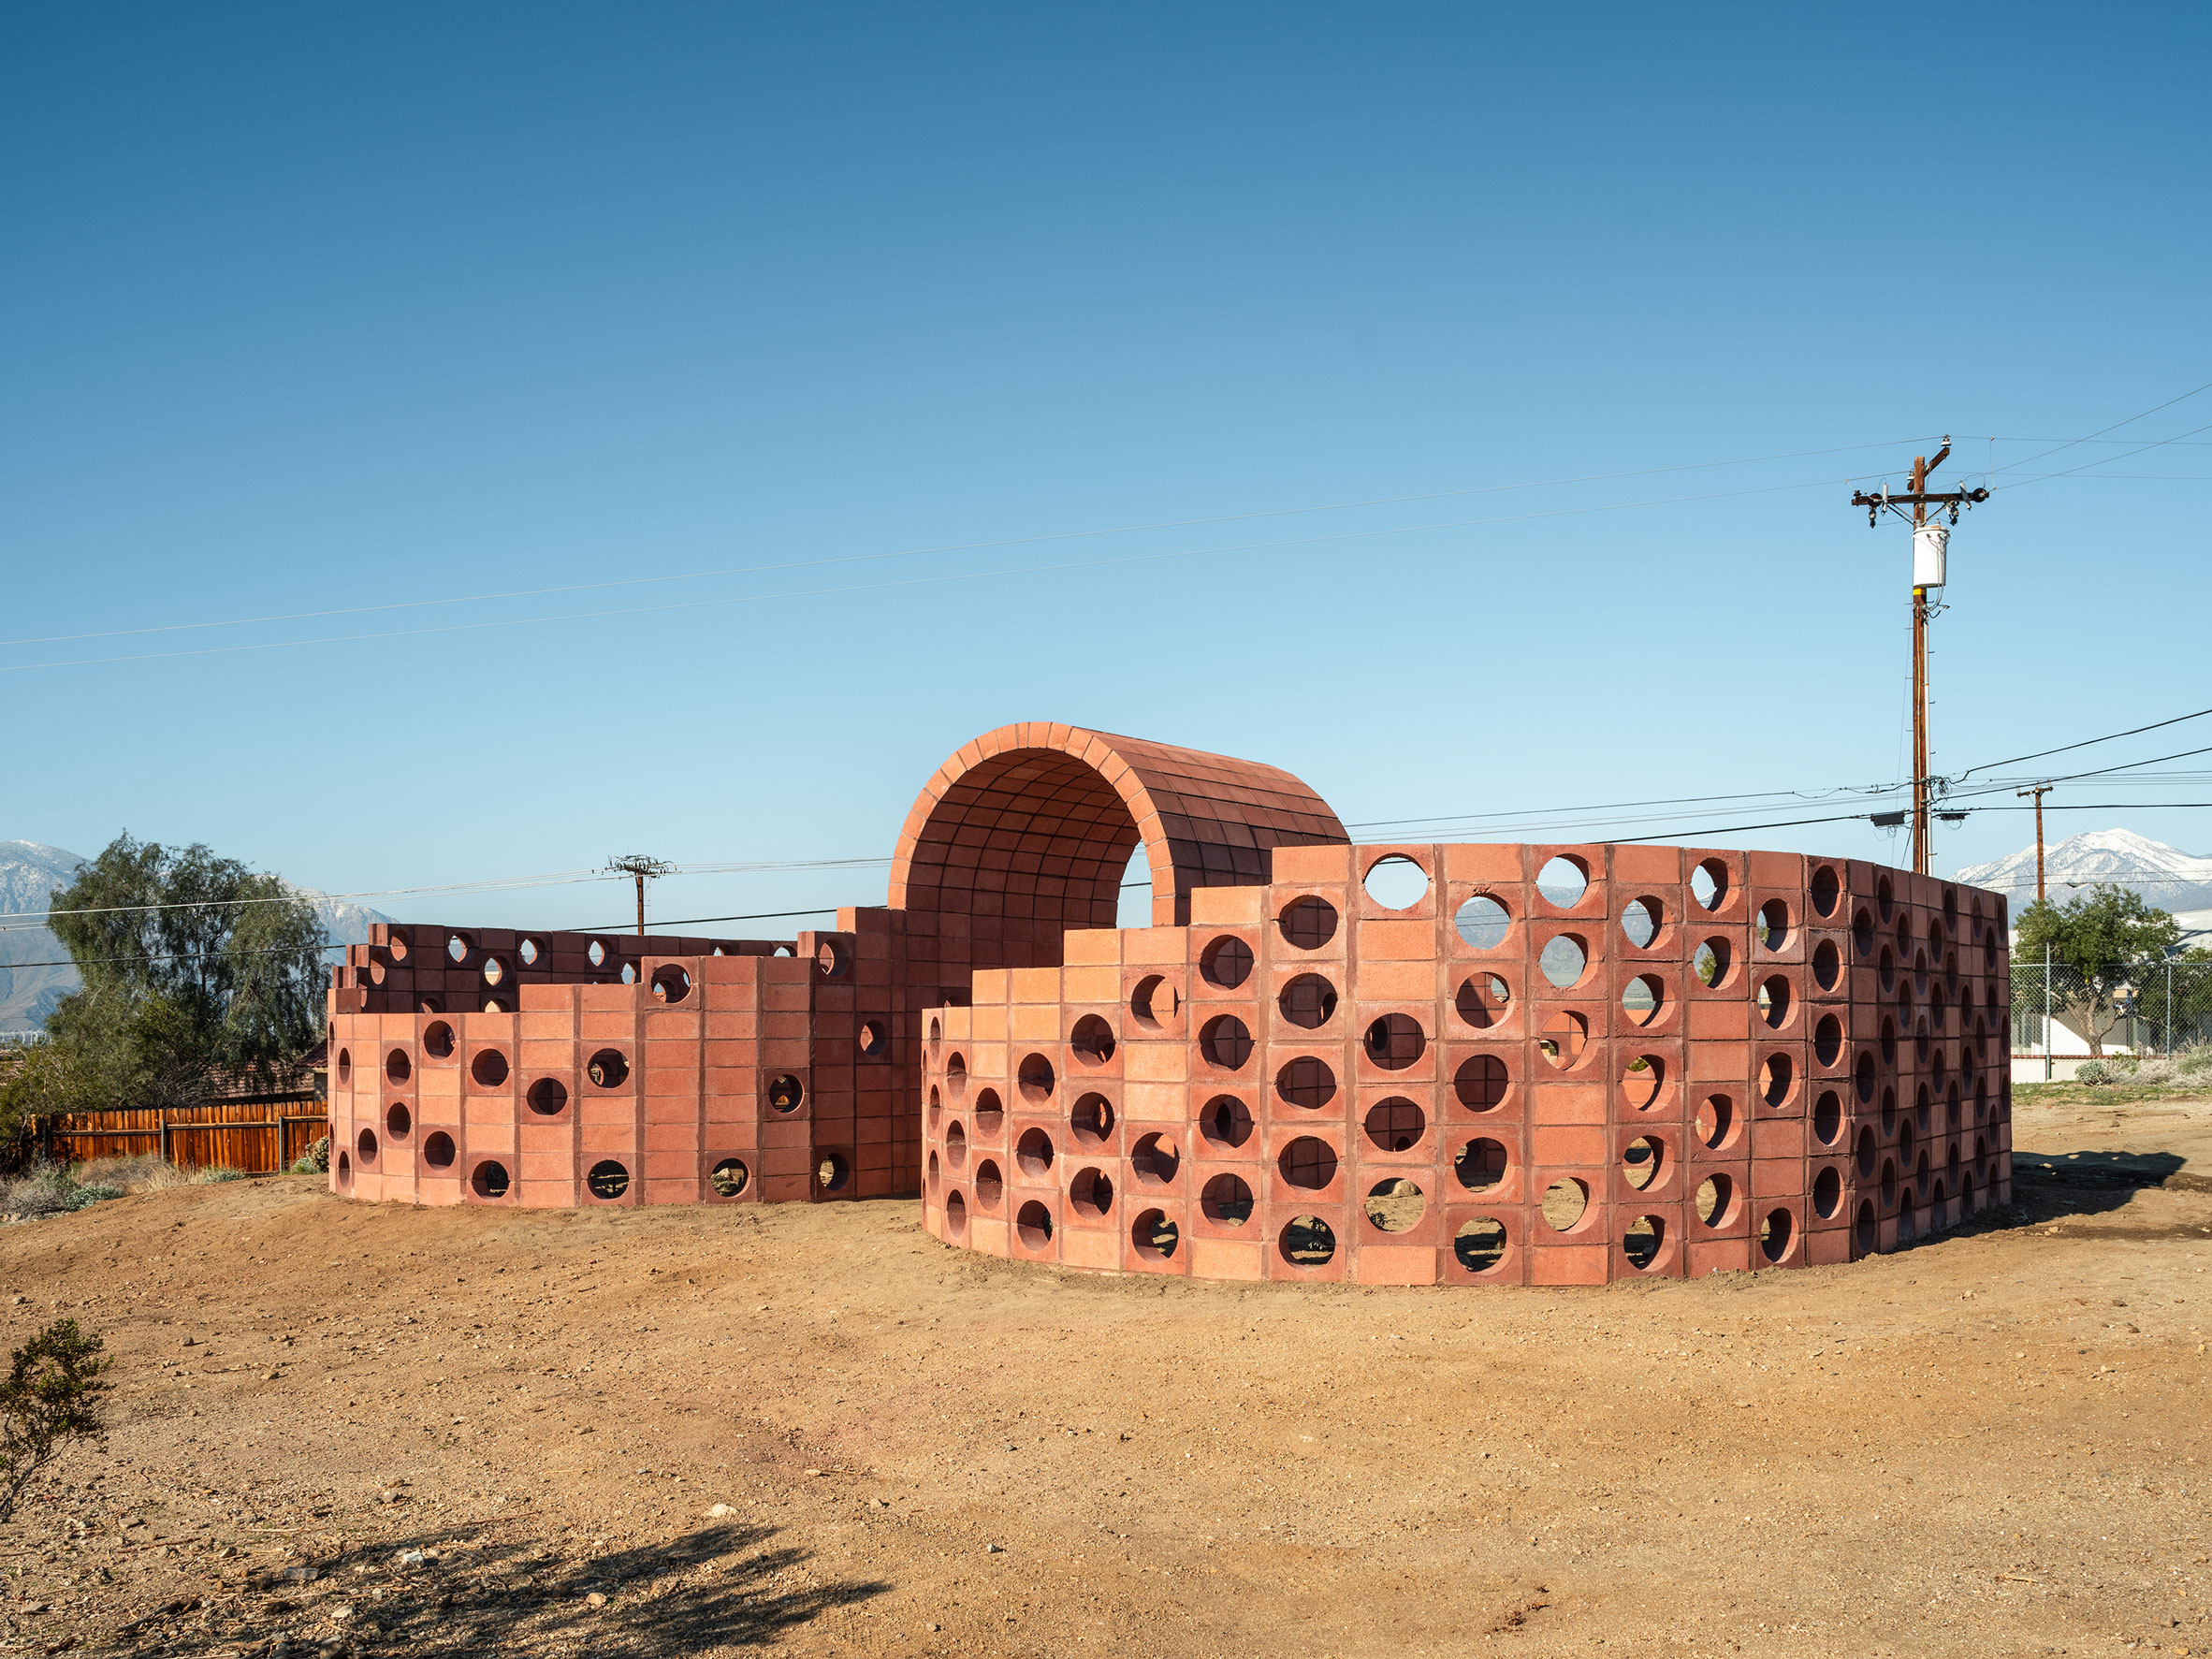 Julian Hoeber's installation for Desert X 2019